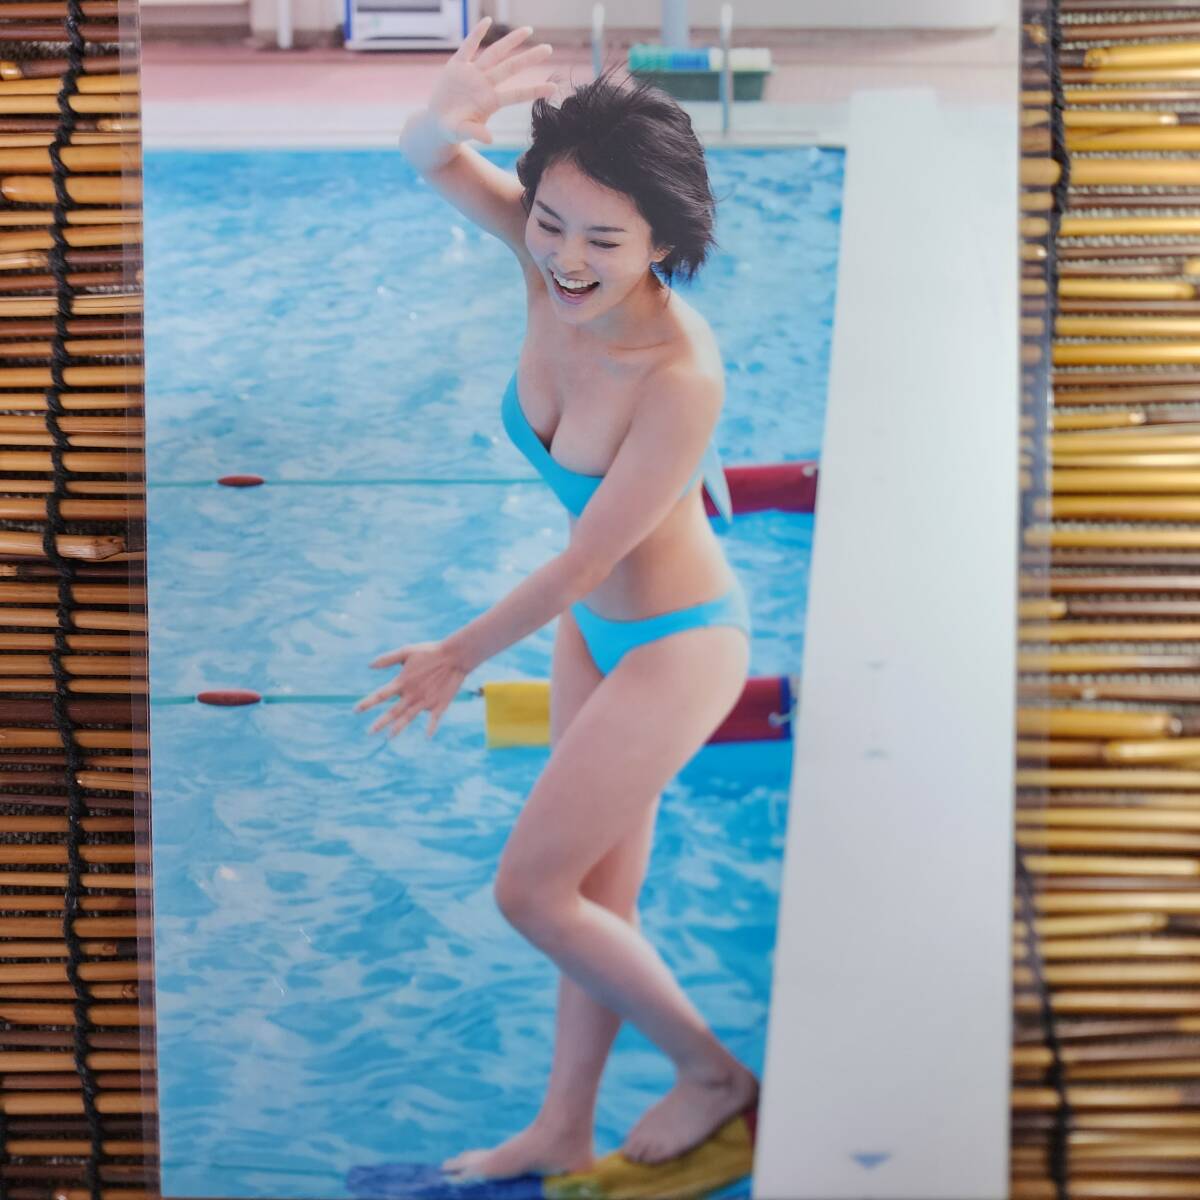 [ высокое качество толстый 150μ ламинирование обработка ] Yamamoto Sayaka купальный костюм B5 журнал вырезки 4 страница [ bikini model ]l17